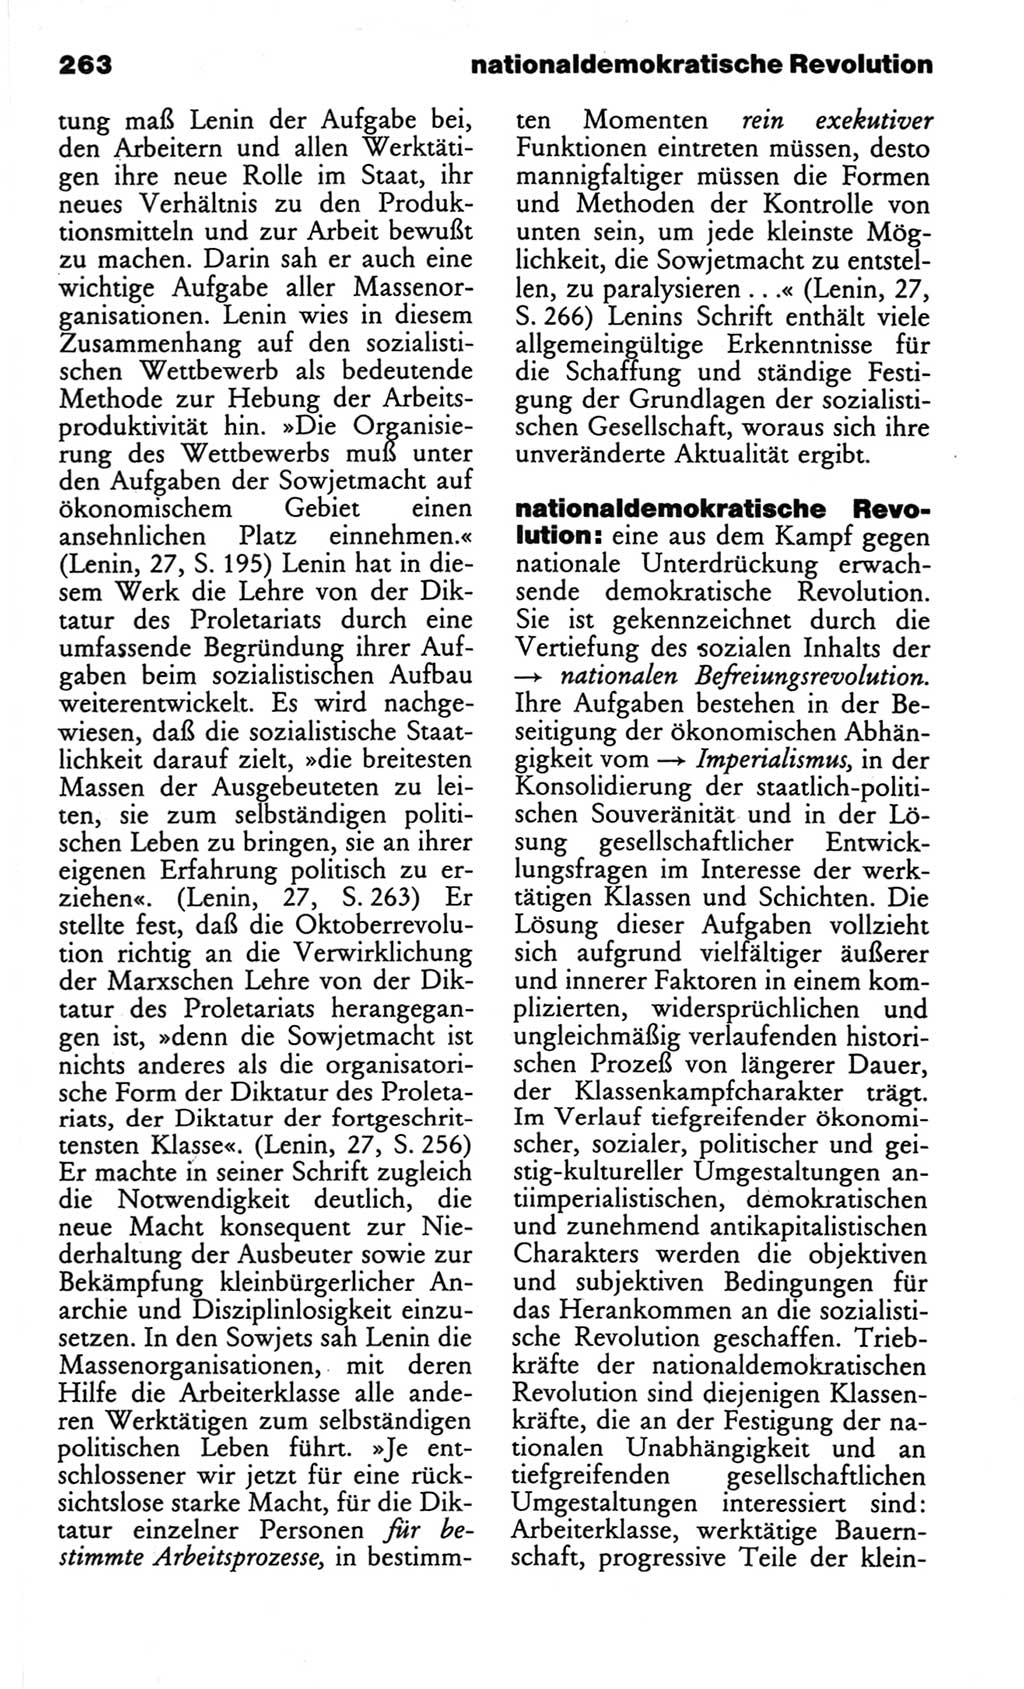 Wörterbuch des wissenschaftlichen Kommunismus [Deutsche Demokratische Republik (DDR)] 1982, Seite 263 (Wb. wiss. Komm. DDR 1982, S. 263)